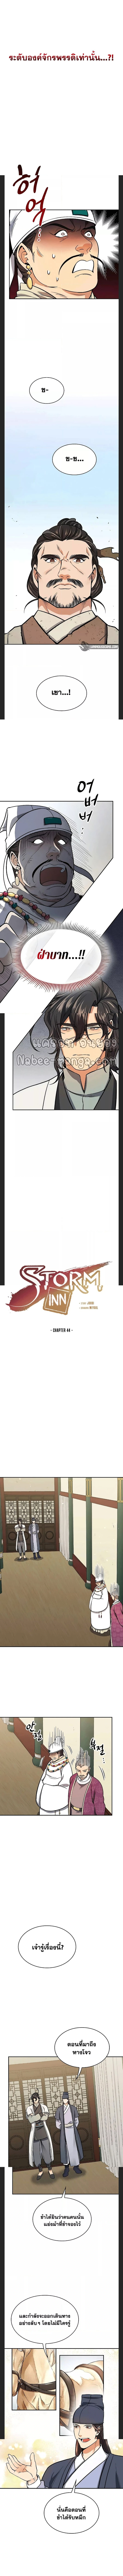 Storm Inn 66 (4)